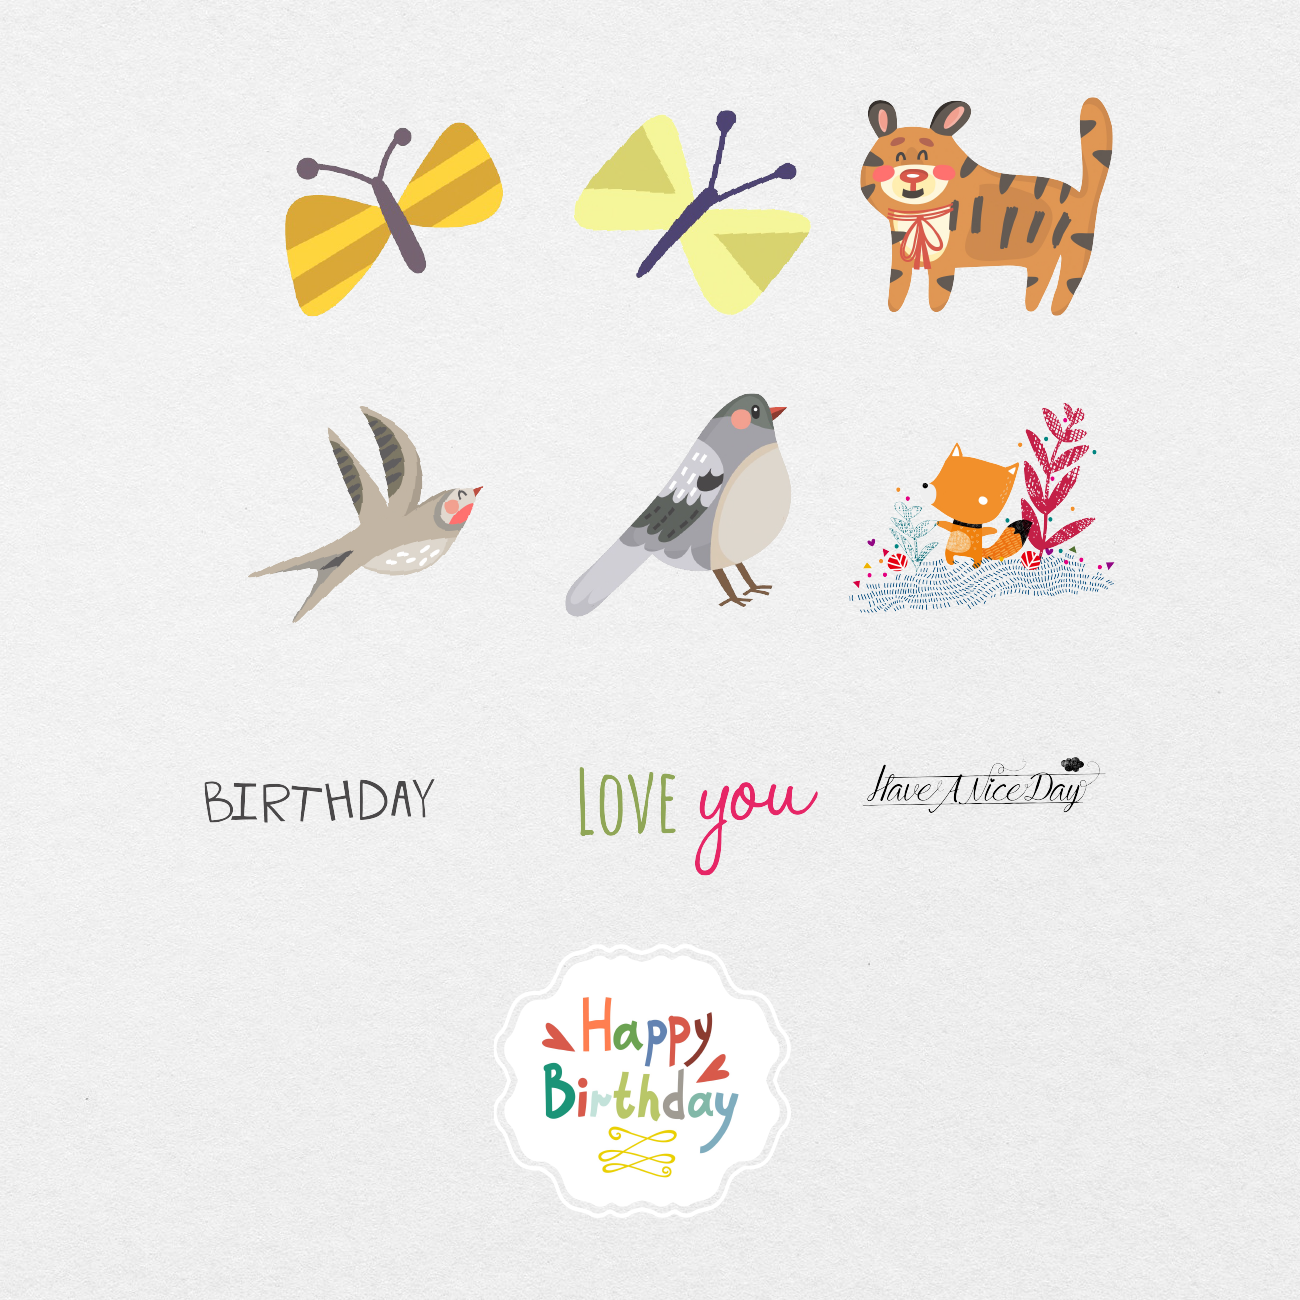 97 Digital Cute Birthday Animal Sticker Bundle - Stationery Pal